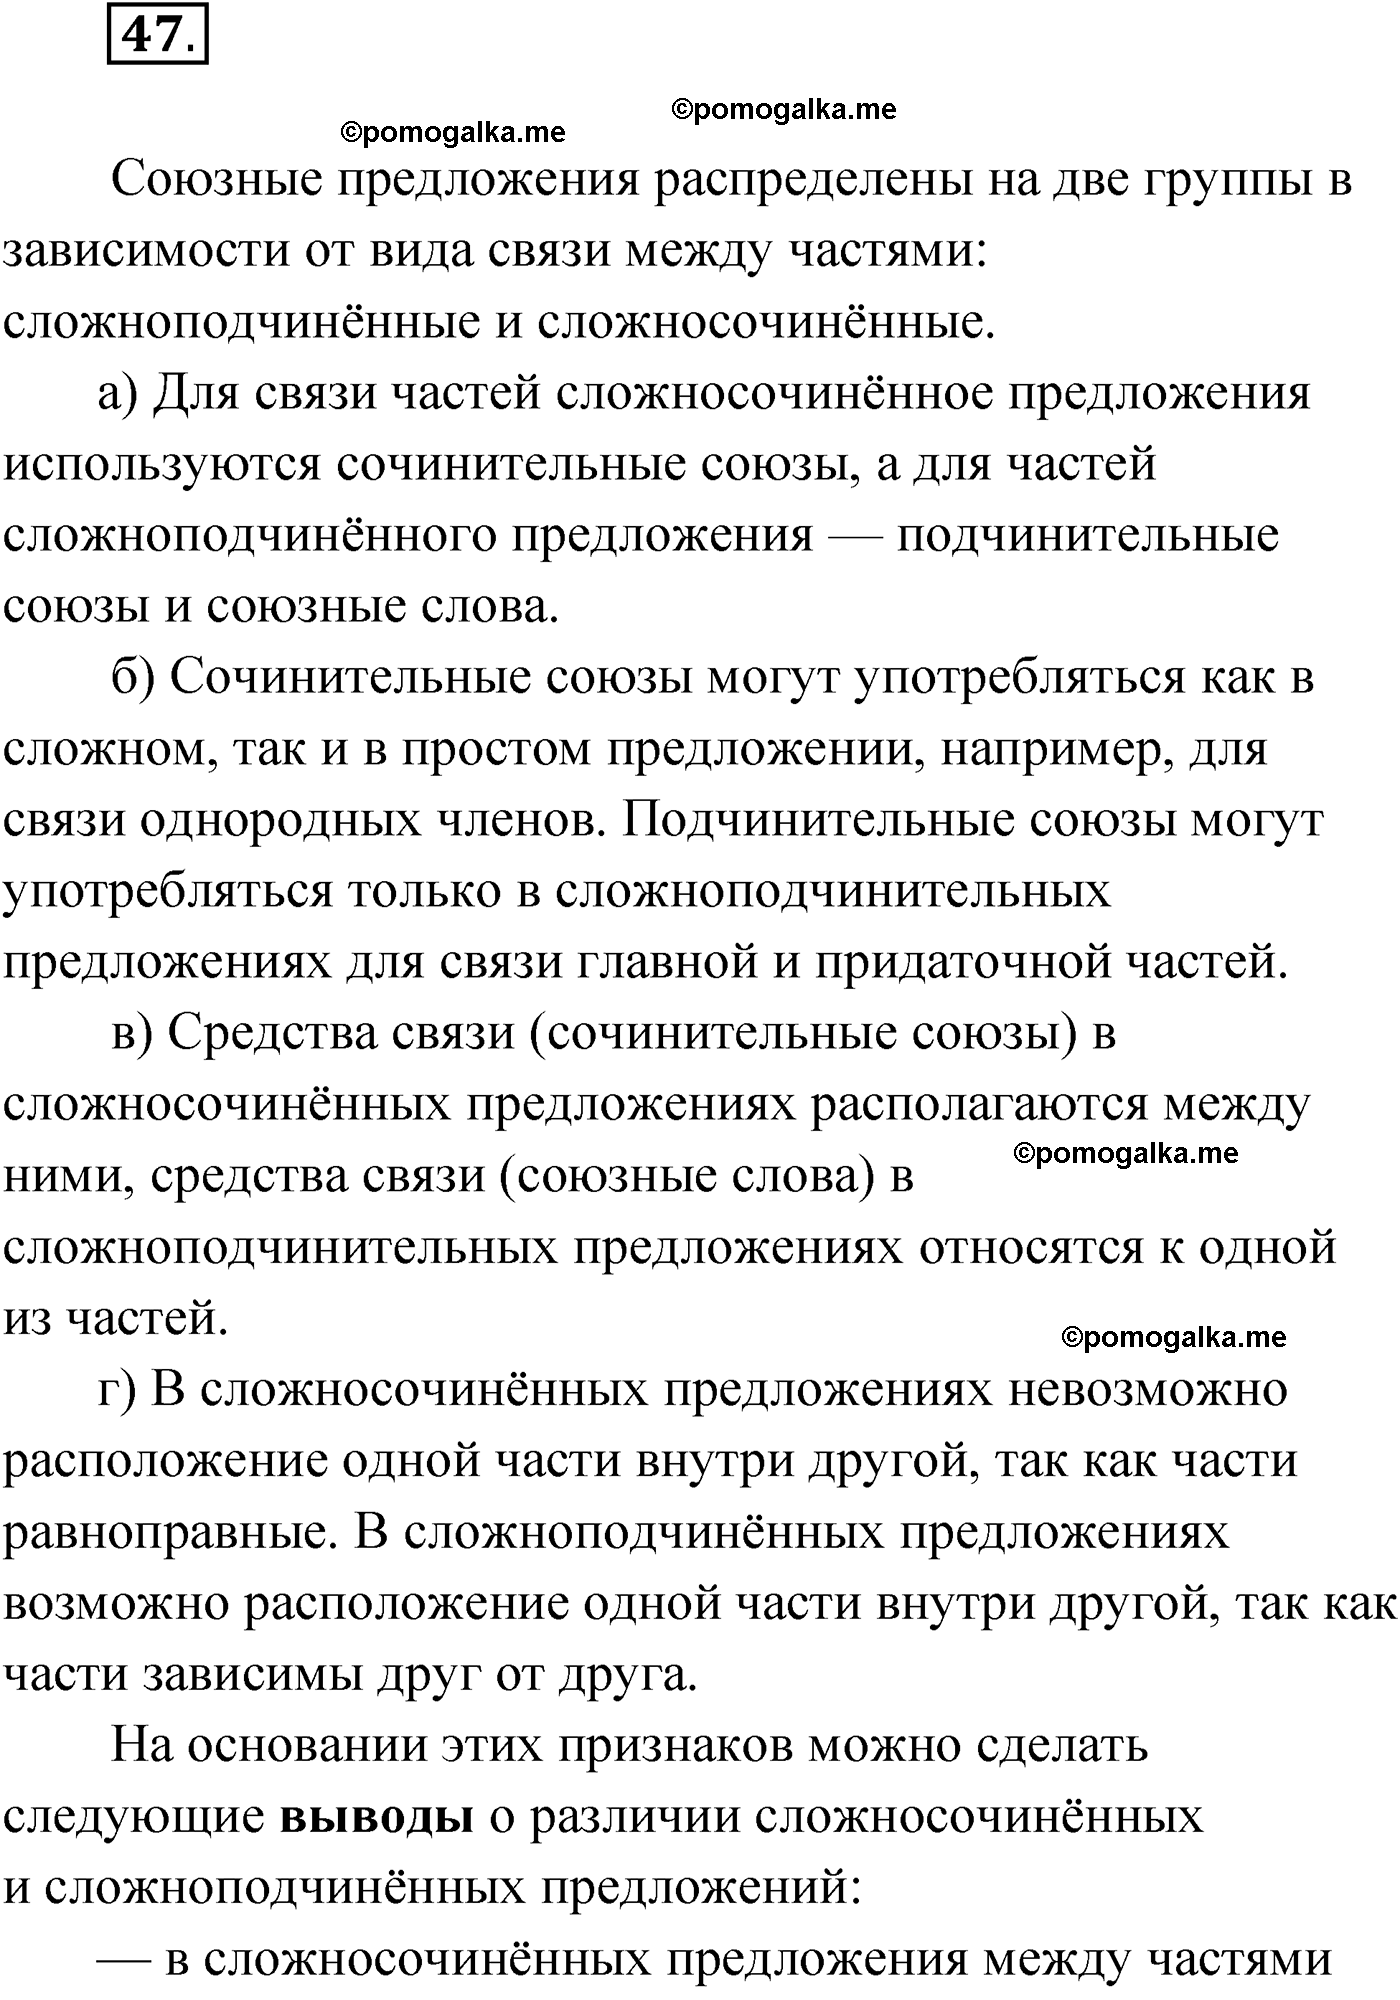 упражнение №47 русский язык 9 класс Мурина 2019 год